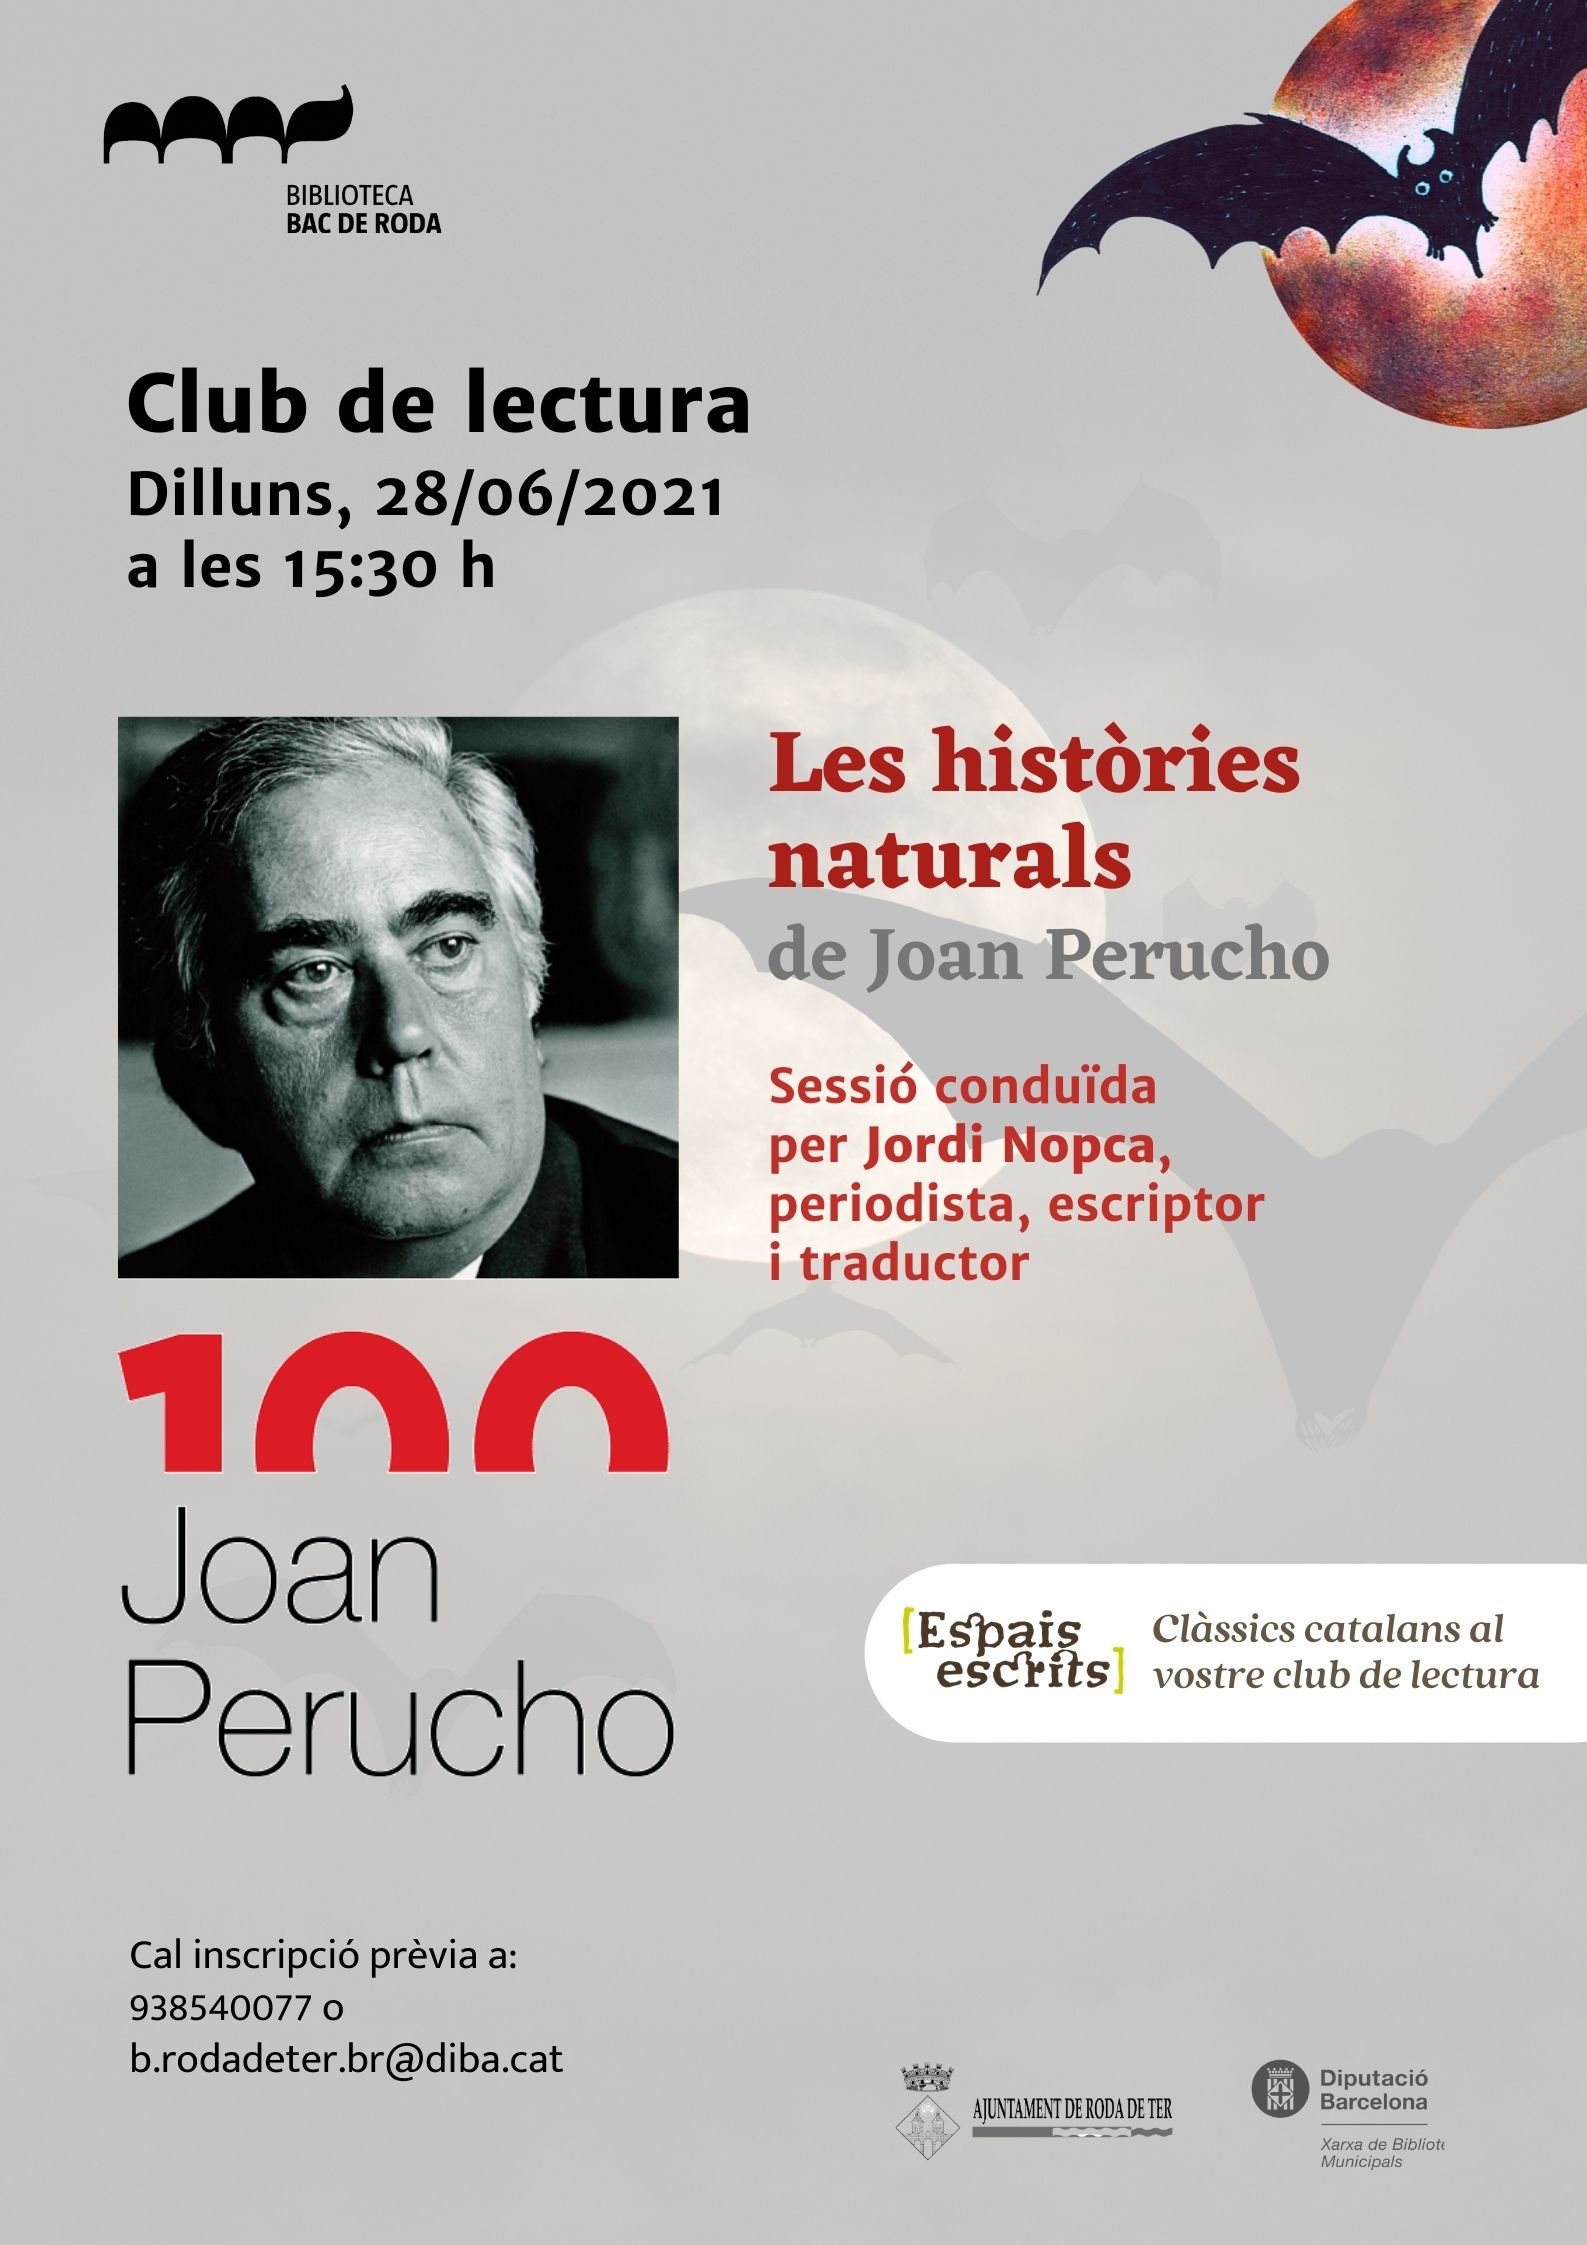 Clàssics catalans al vostre club de lectura.  CLUB DE LECTURA: tertúlia literària al voltant de Les històries naturals, de Joan Perucho. 